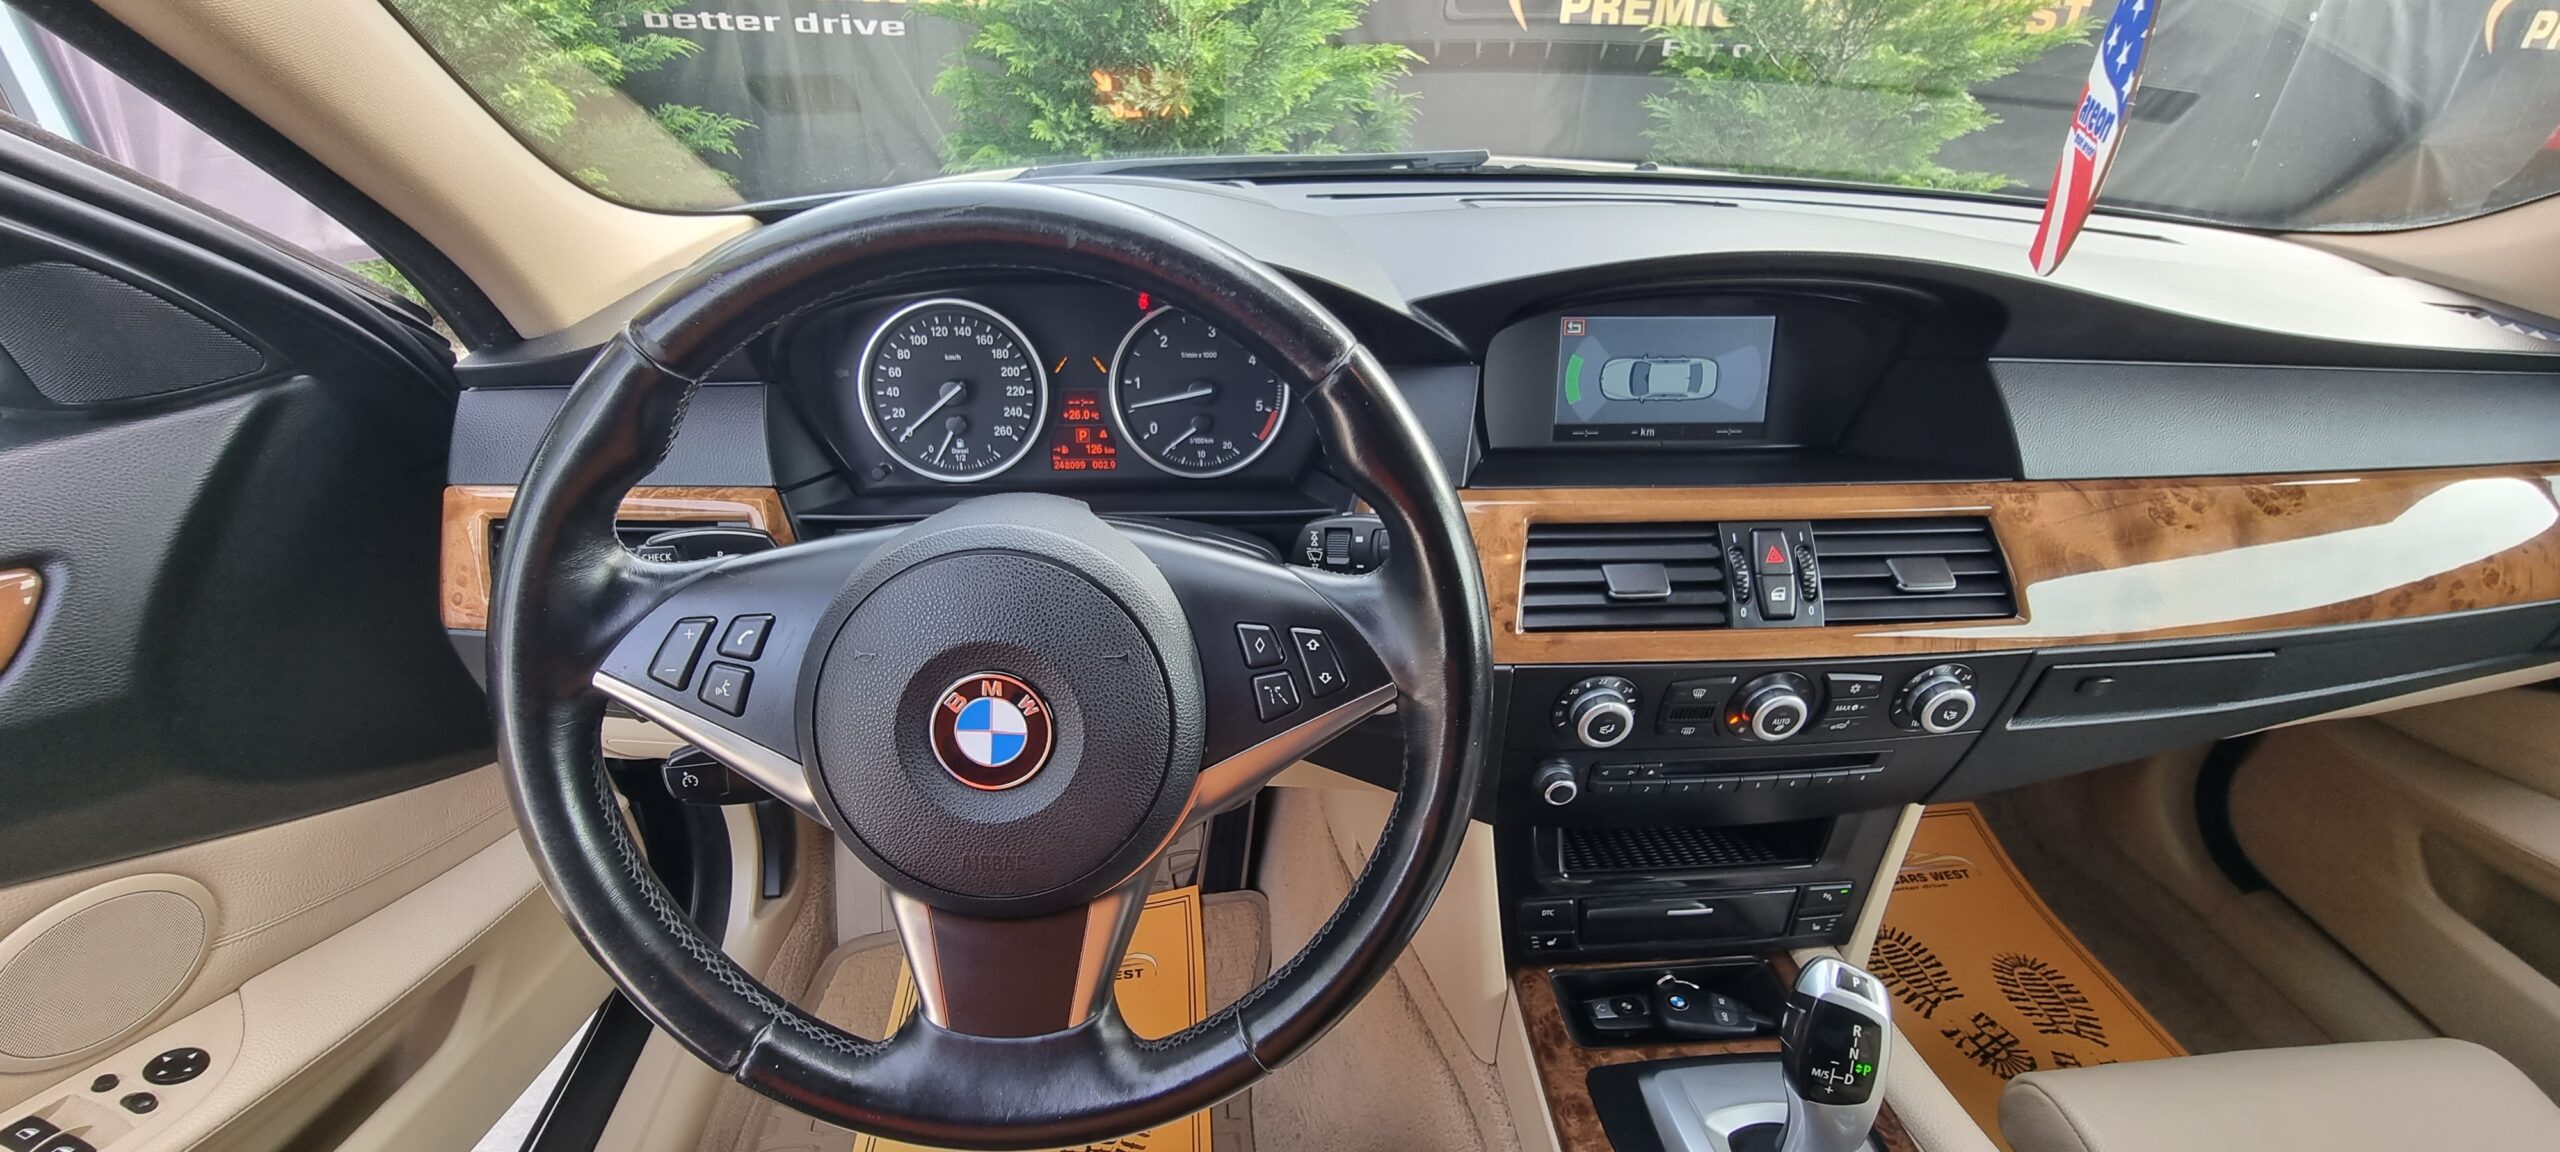 BMW 530 X-DRIVE, 3.0 DIESEL, 235 CP, AN 2008